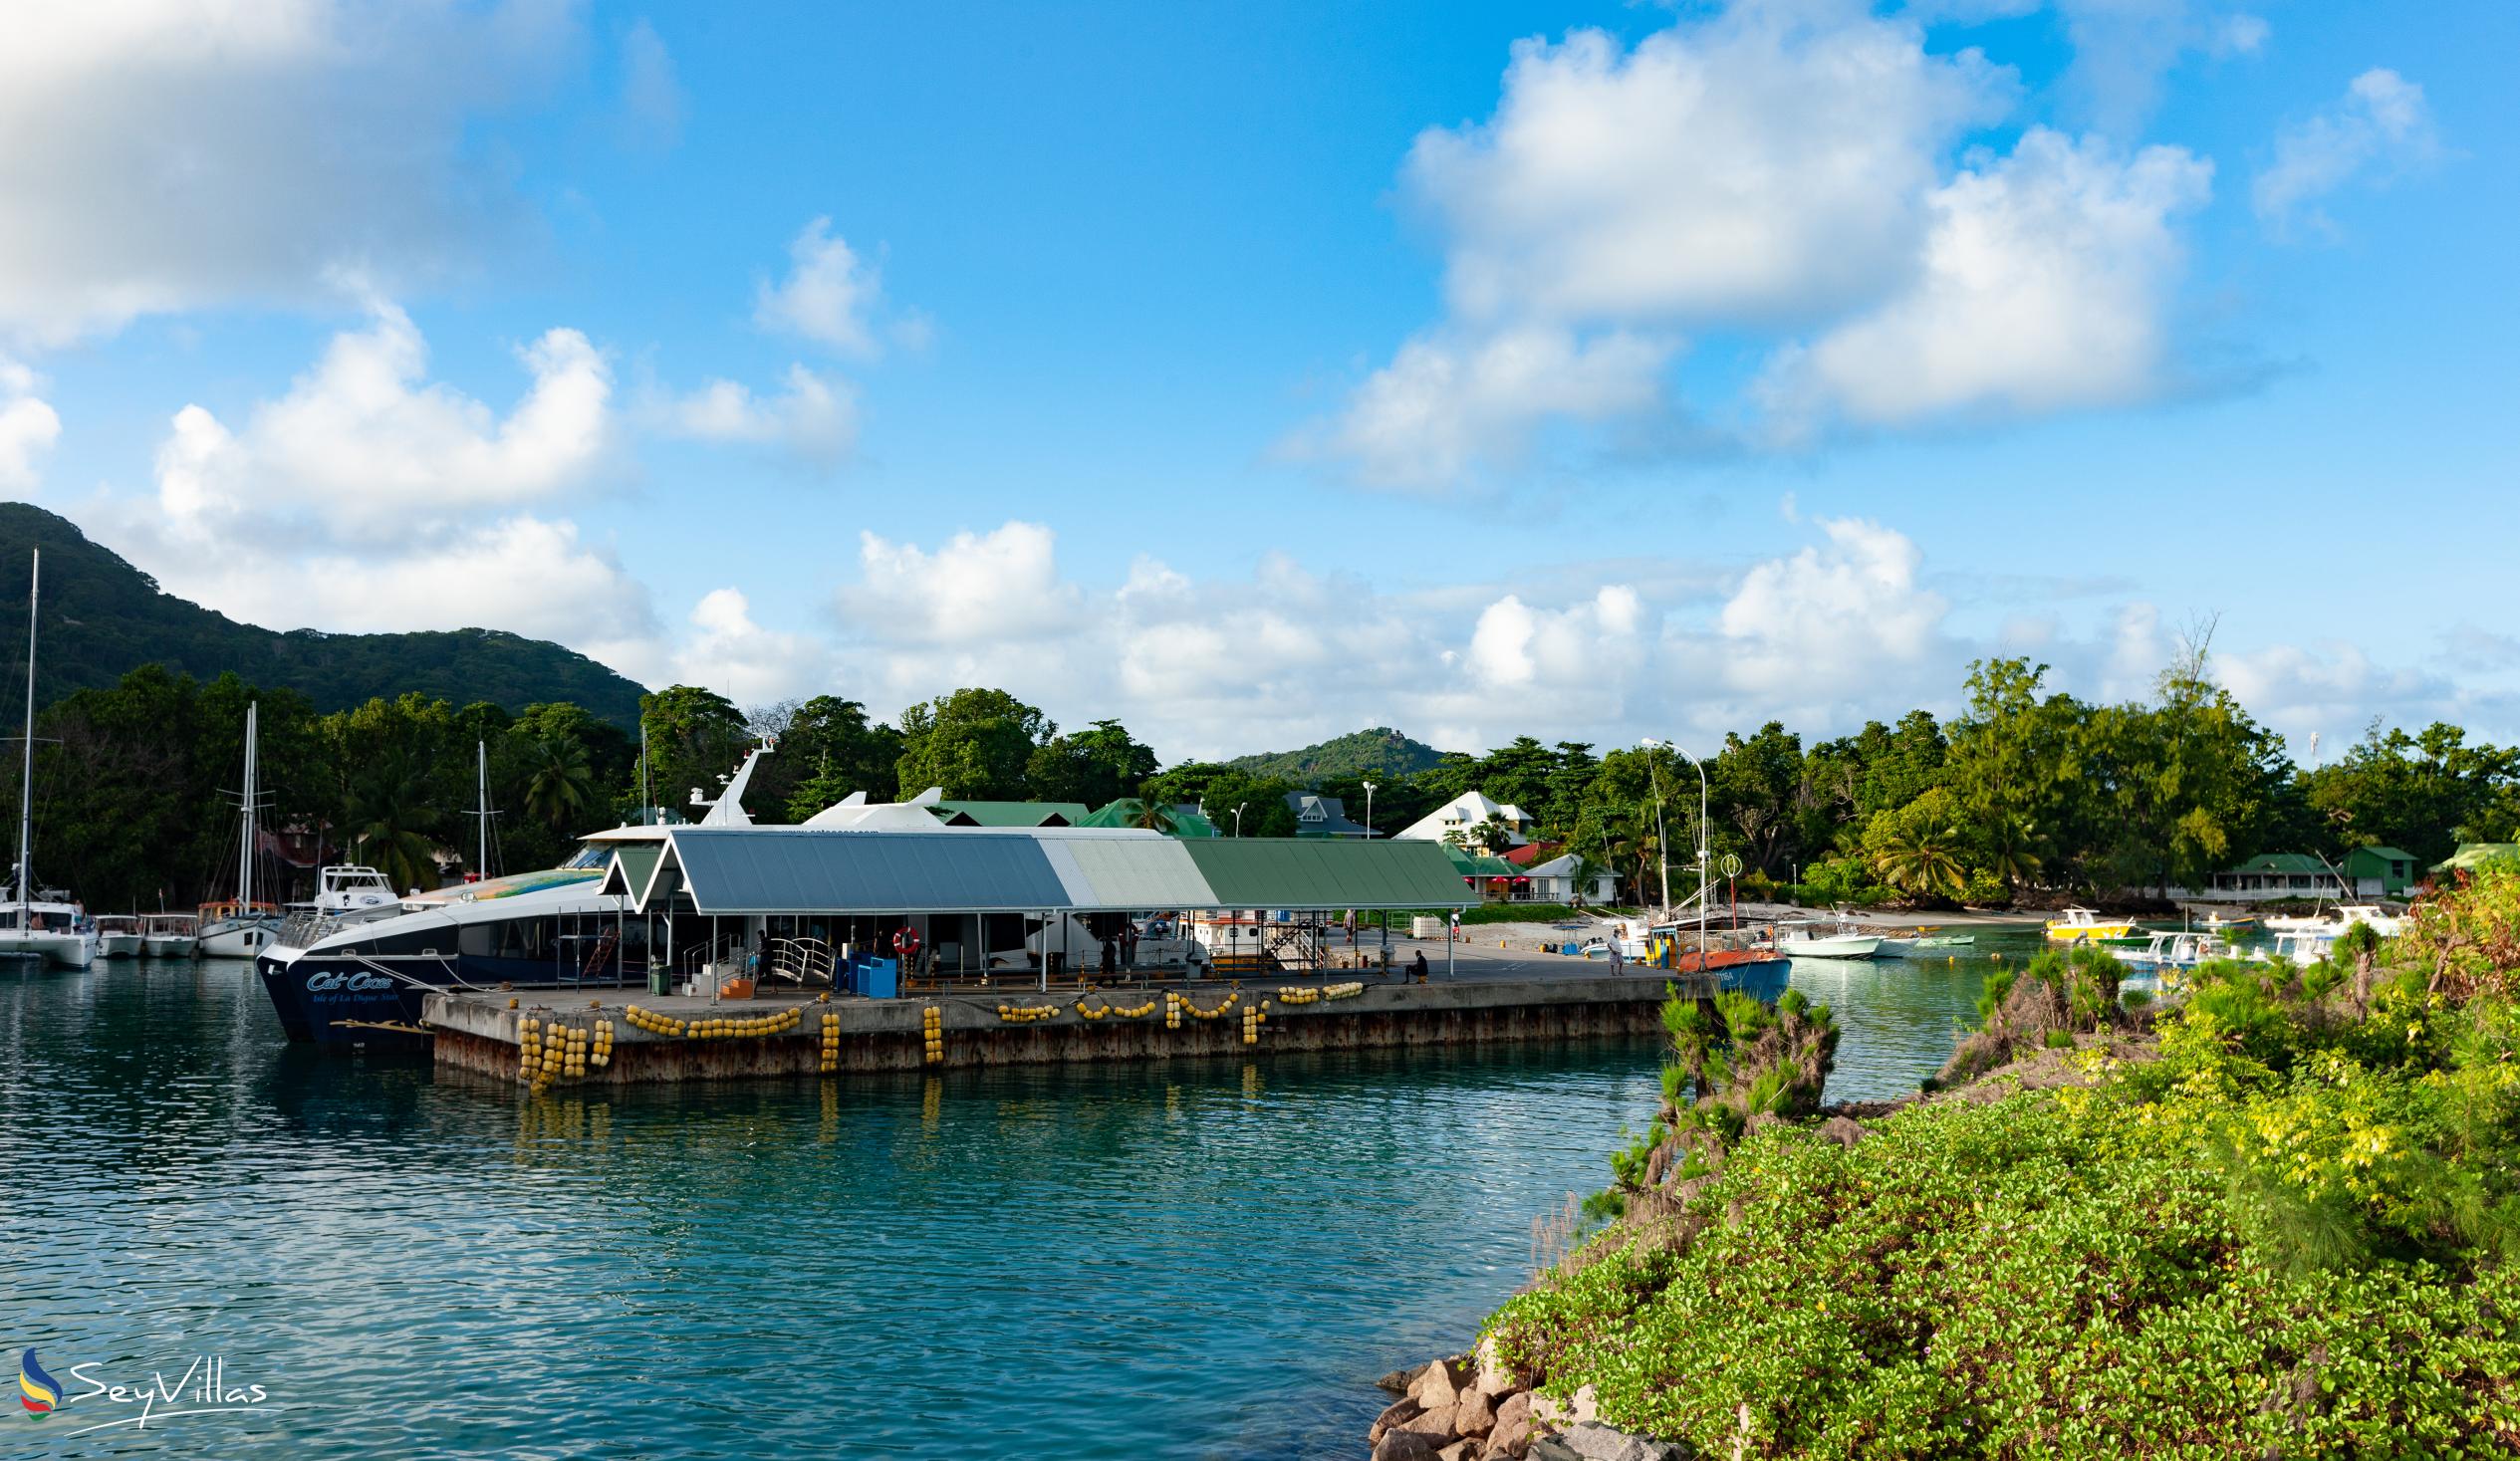 Foto 16: Calou Guesthouse - Posizione - La Digue (Seychelles)